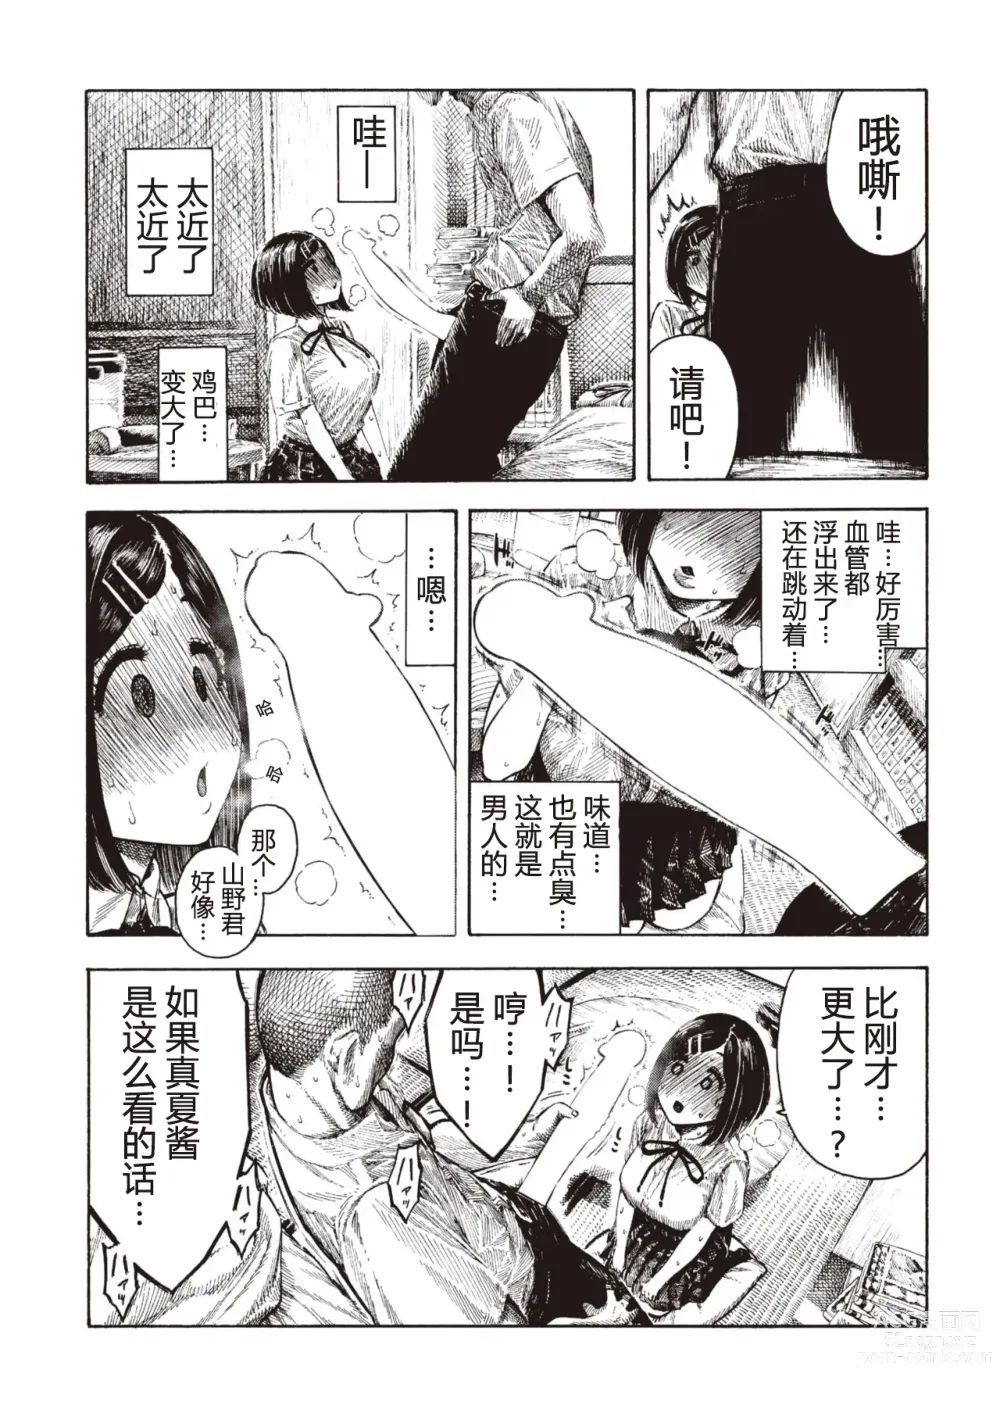 Page 9 of manga Manatsu-chan no Benkyoukai